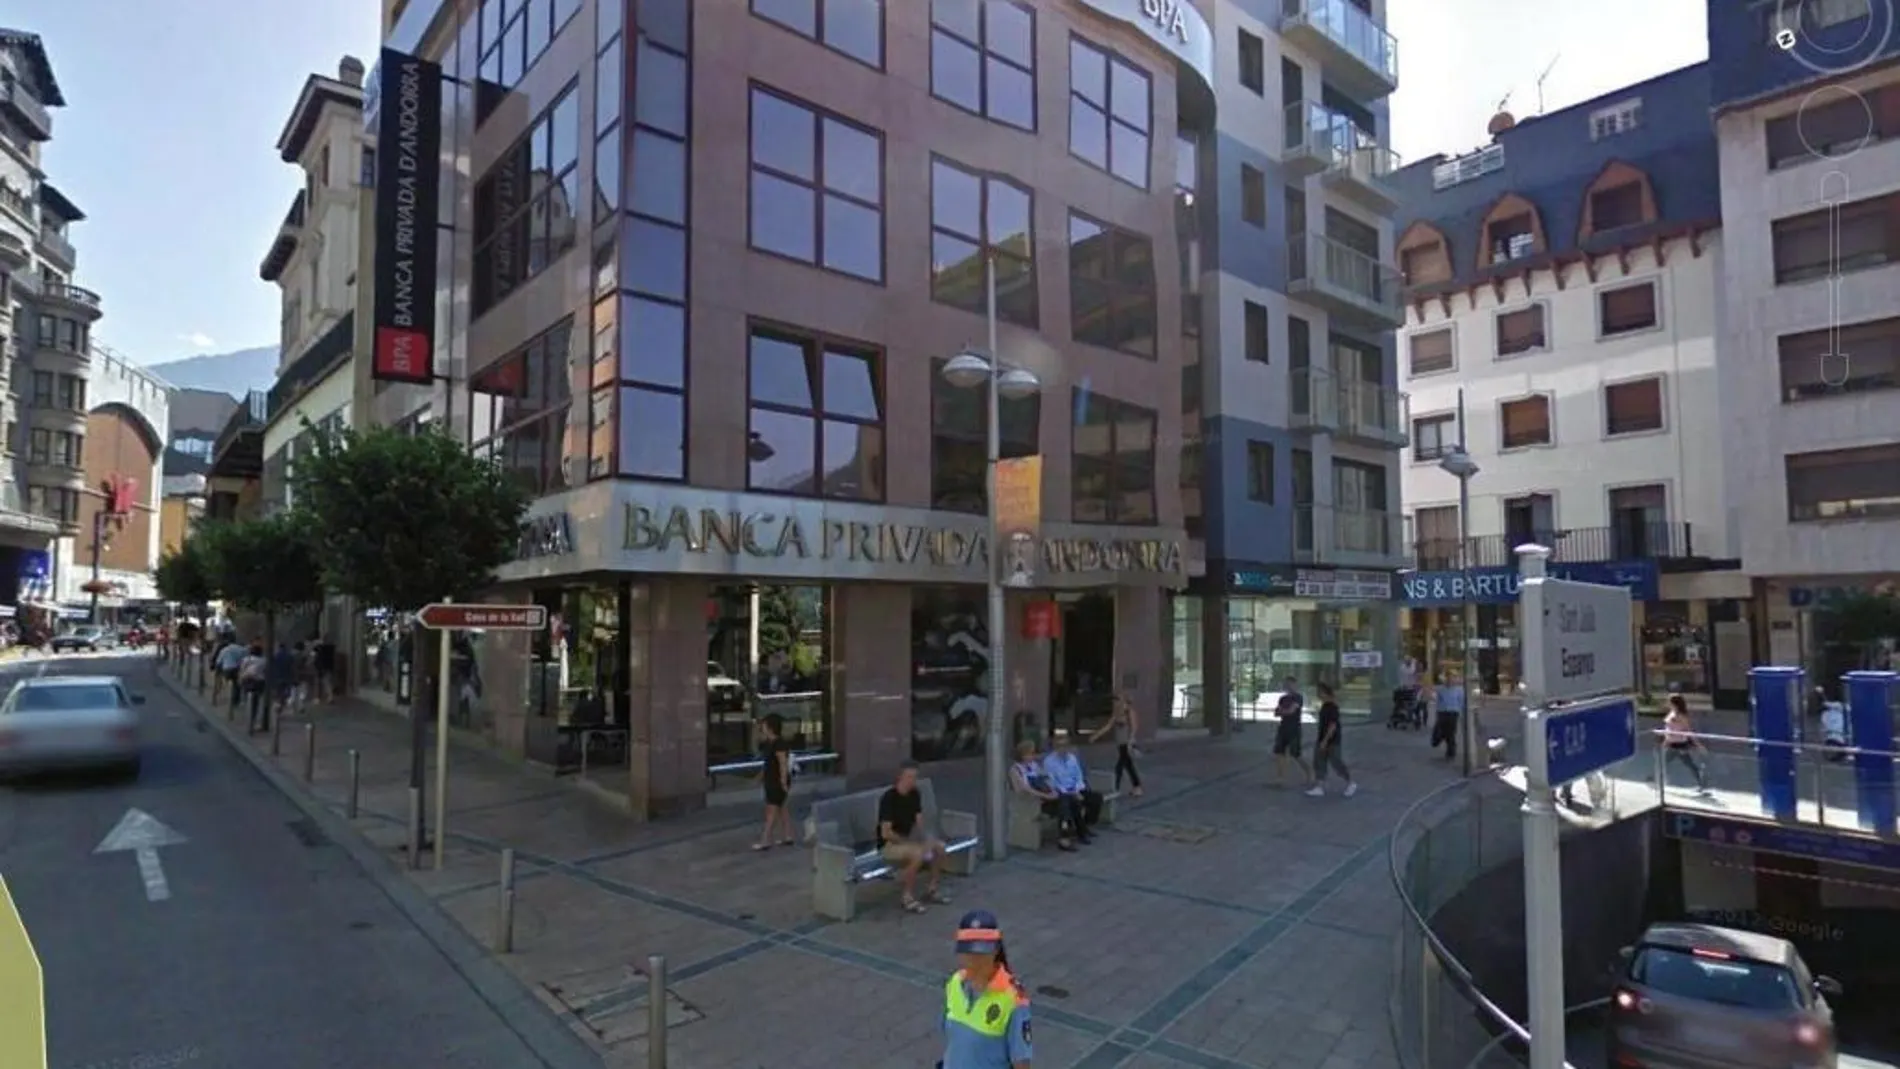 Vista de la sede de Banca Privada de Andorra